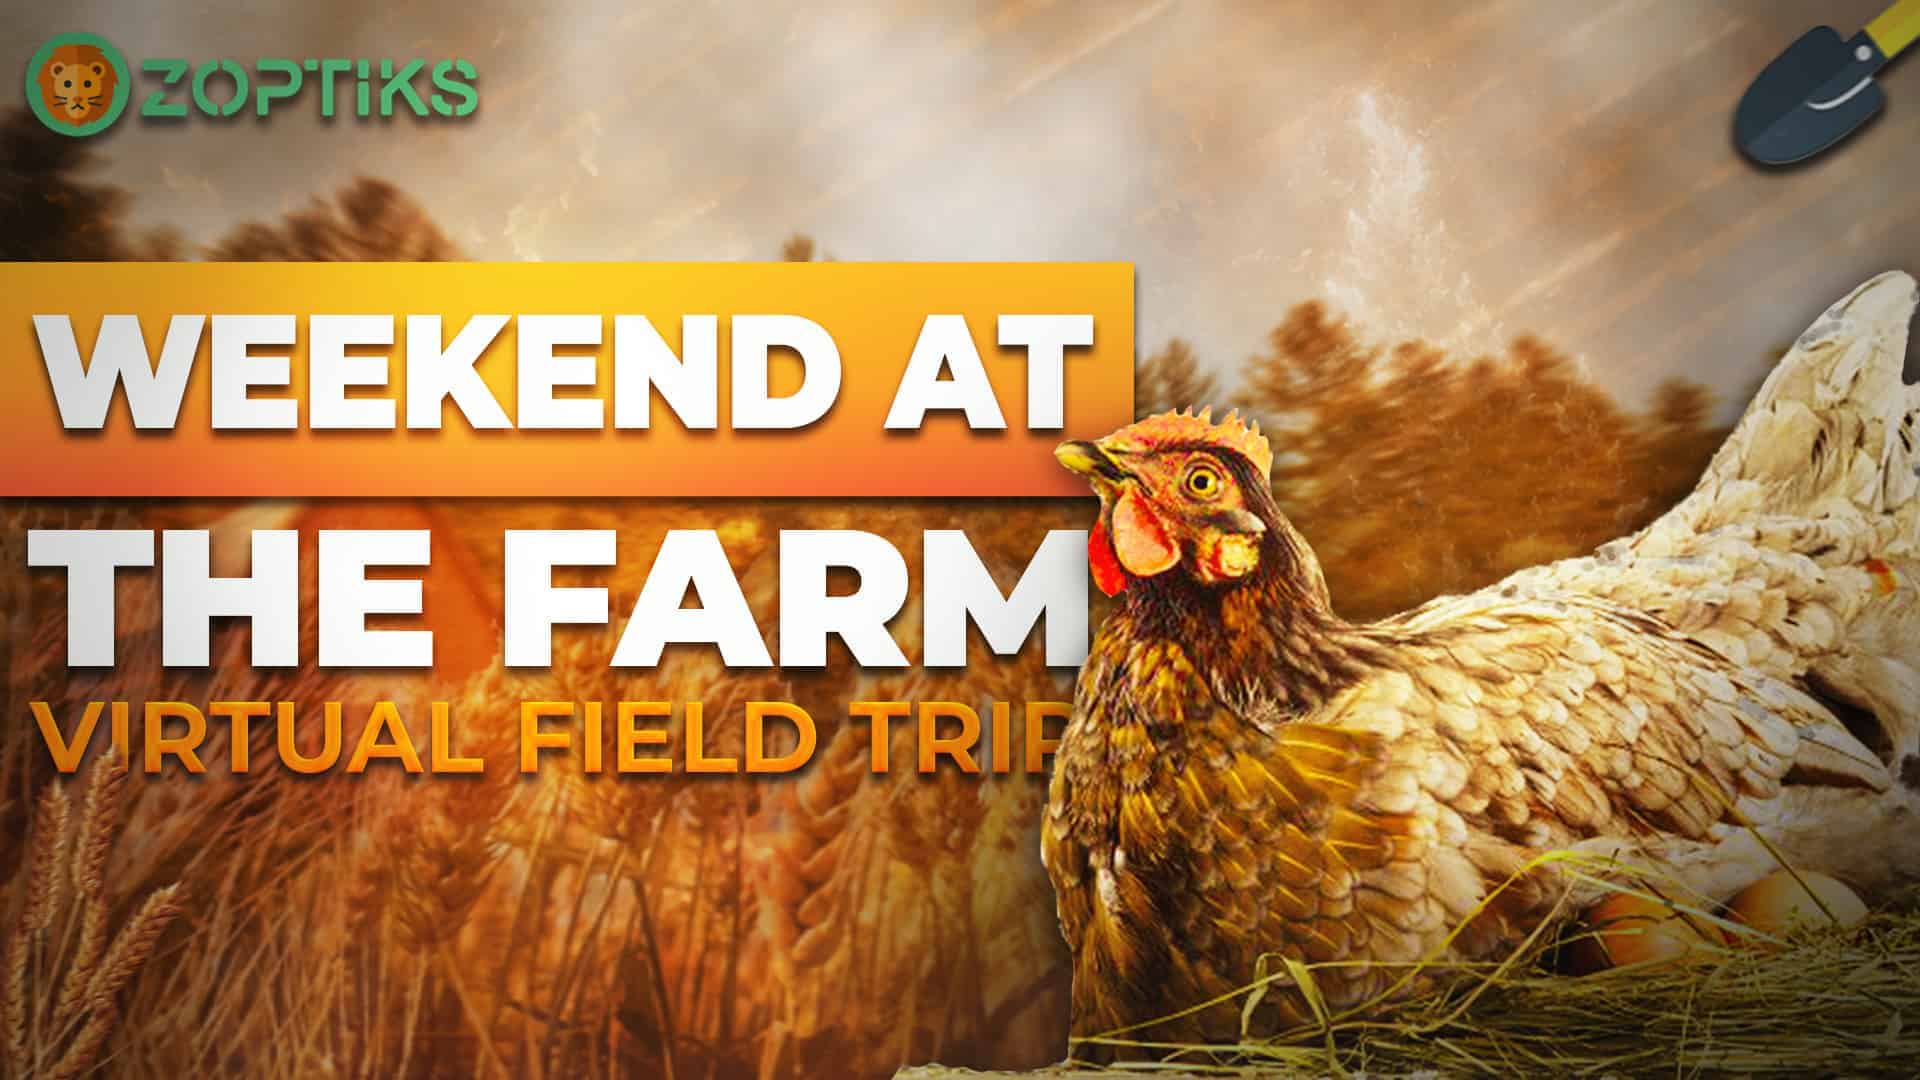 Weekend at the farm virtual field trip